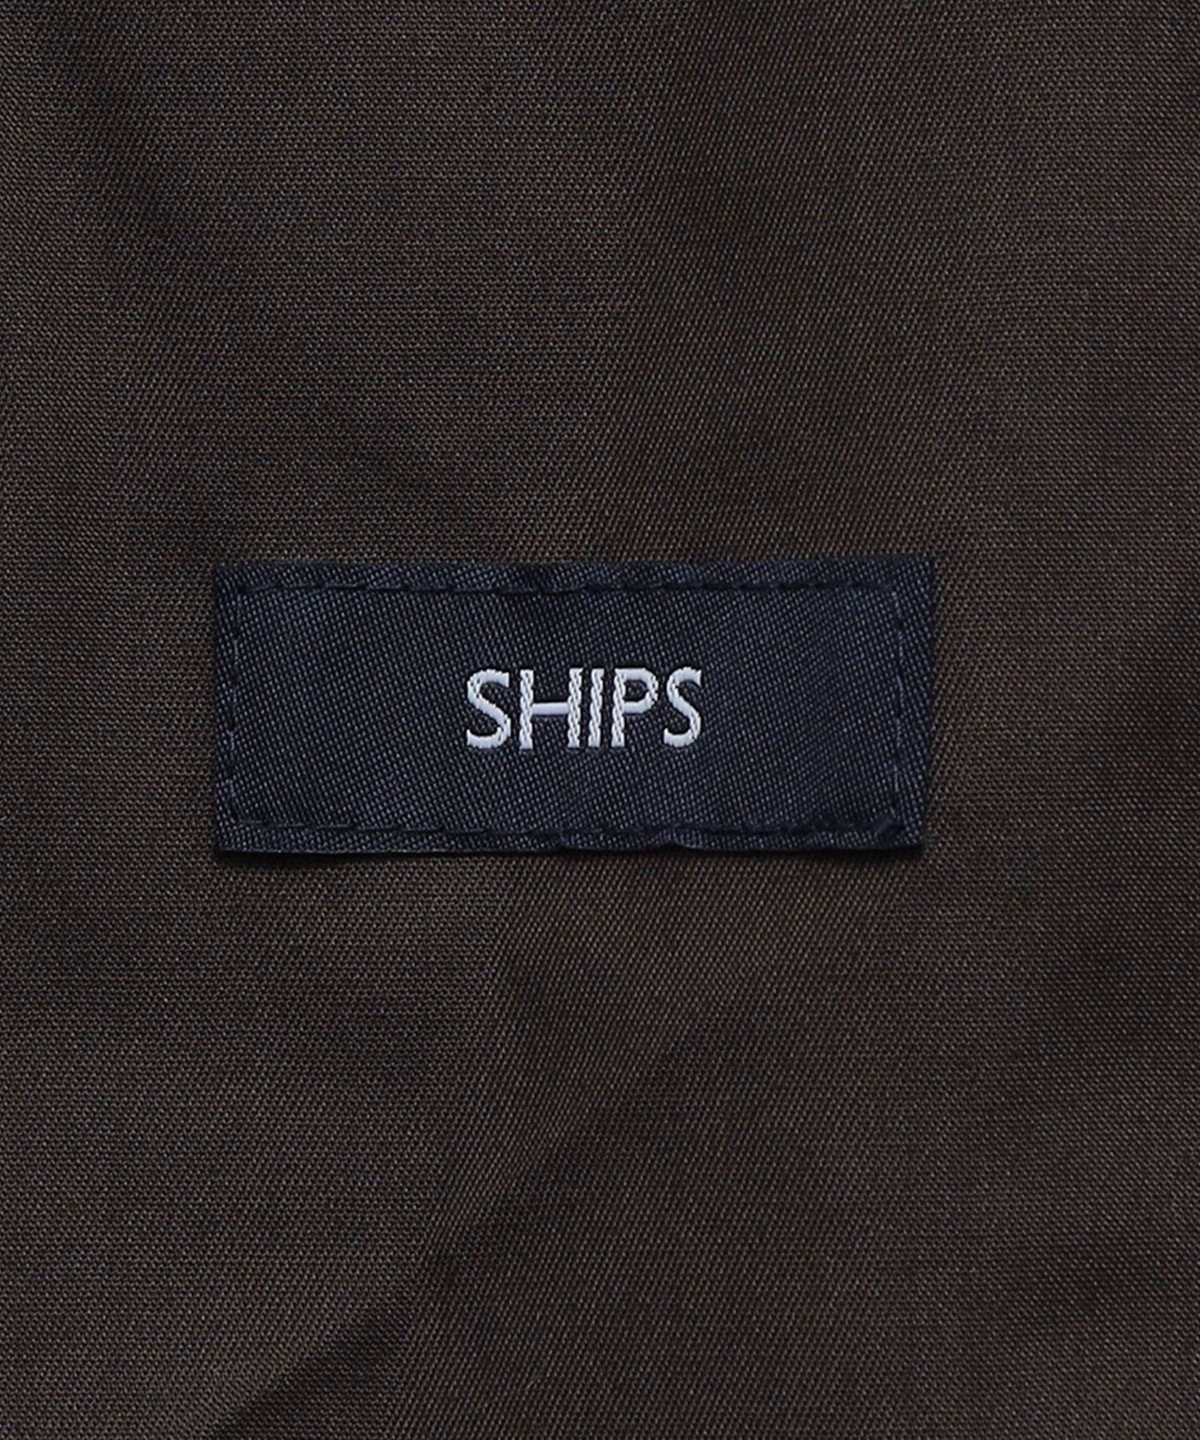 SHIPS: トリプルクロス ワンタック ワイド テーパード パンツ: パンツ